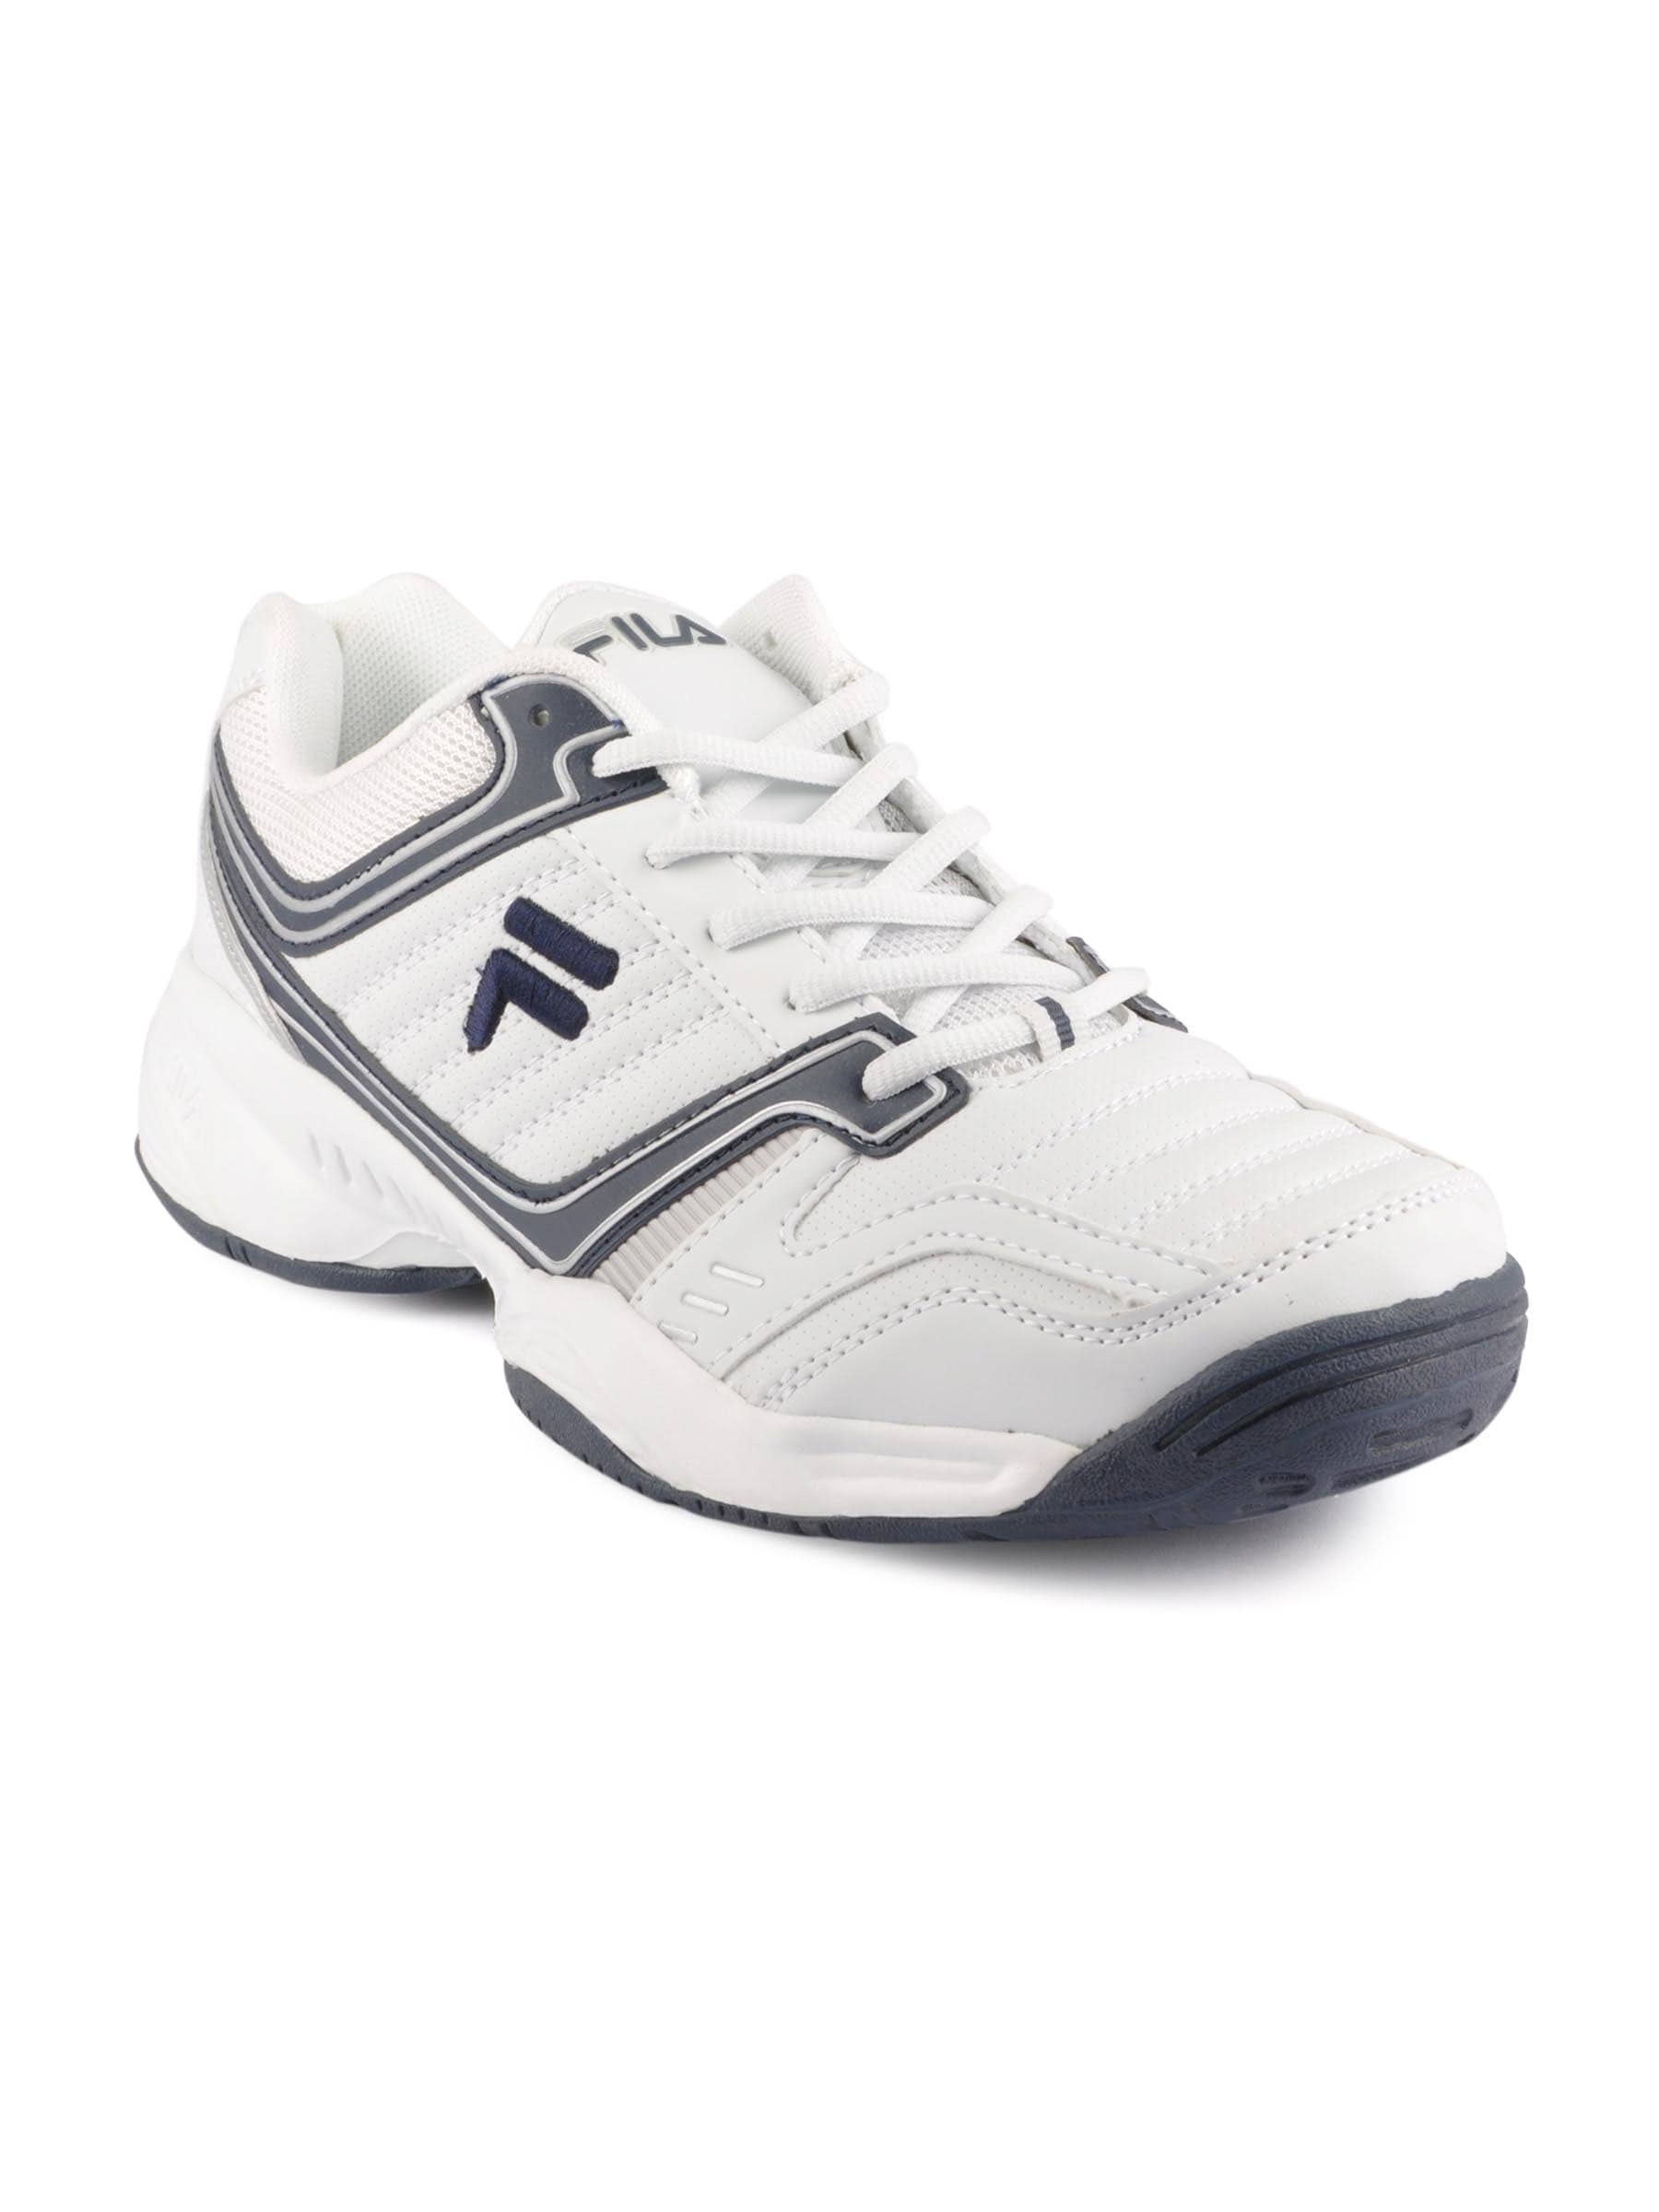 Fila Men Sports White Shoes